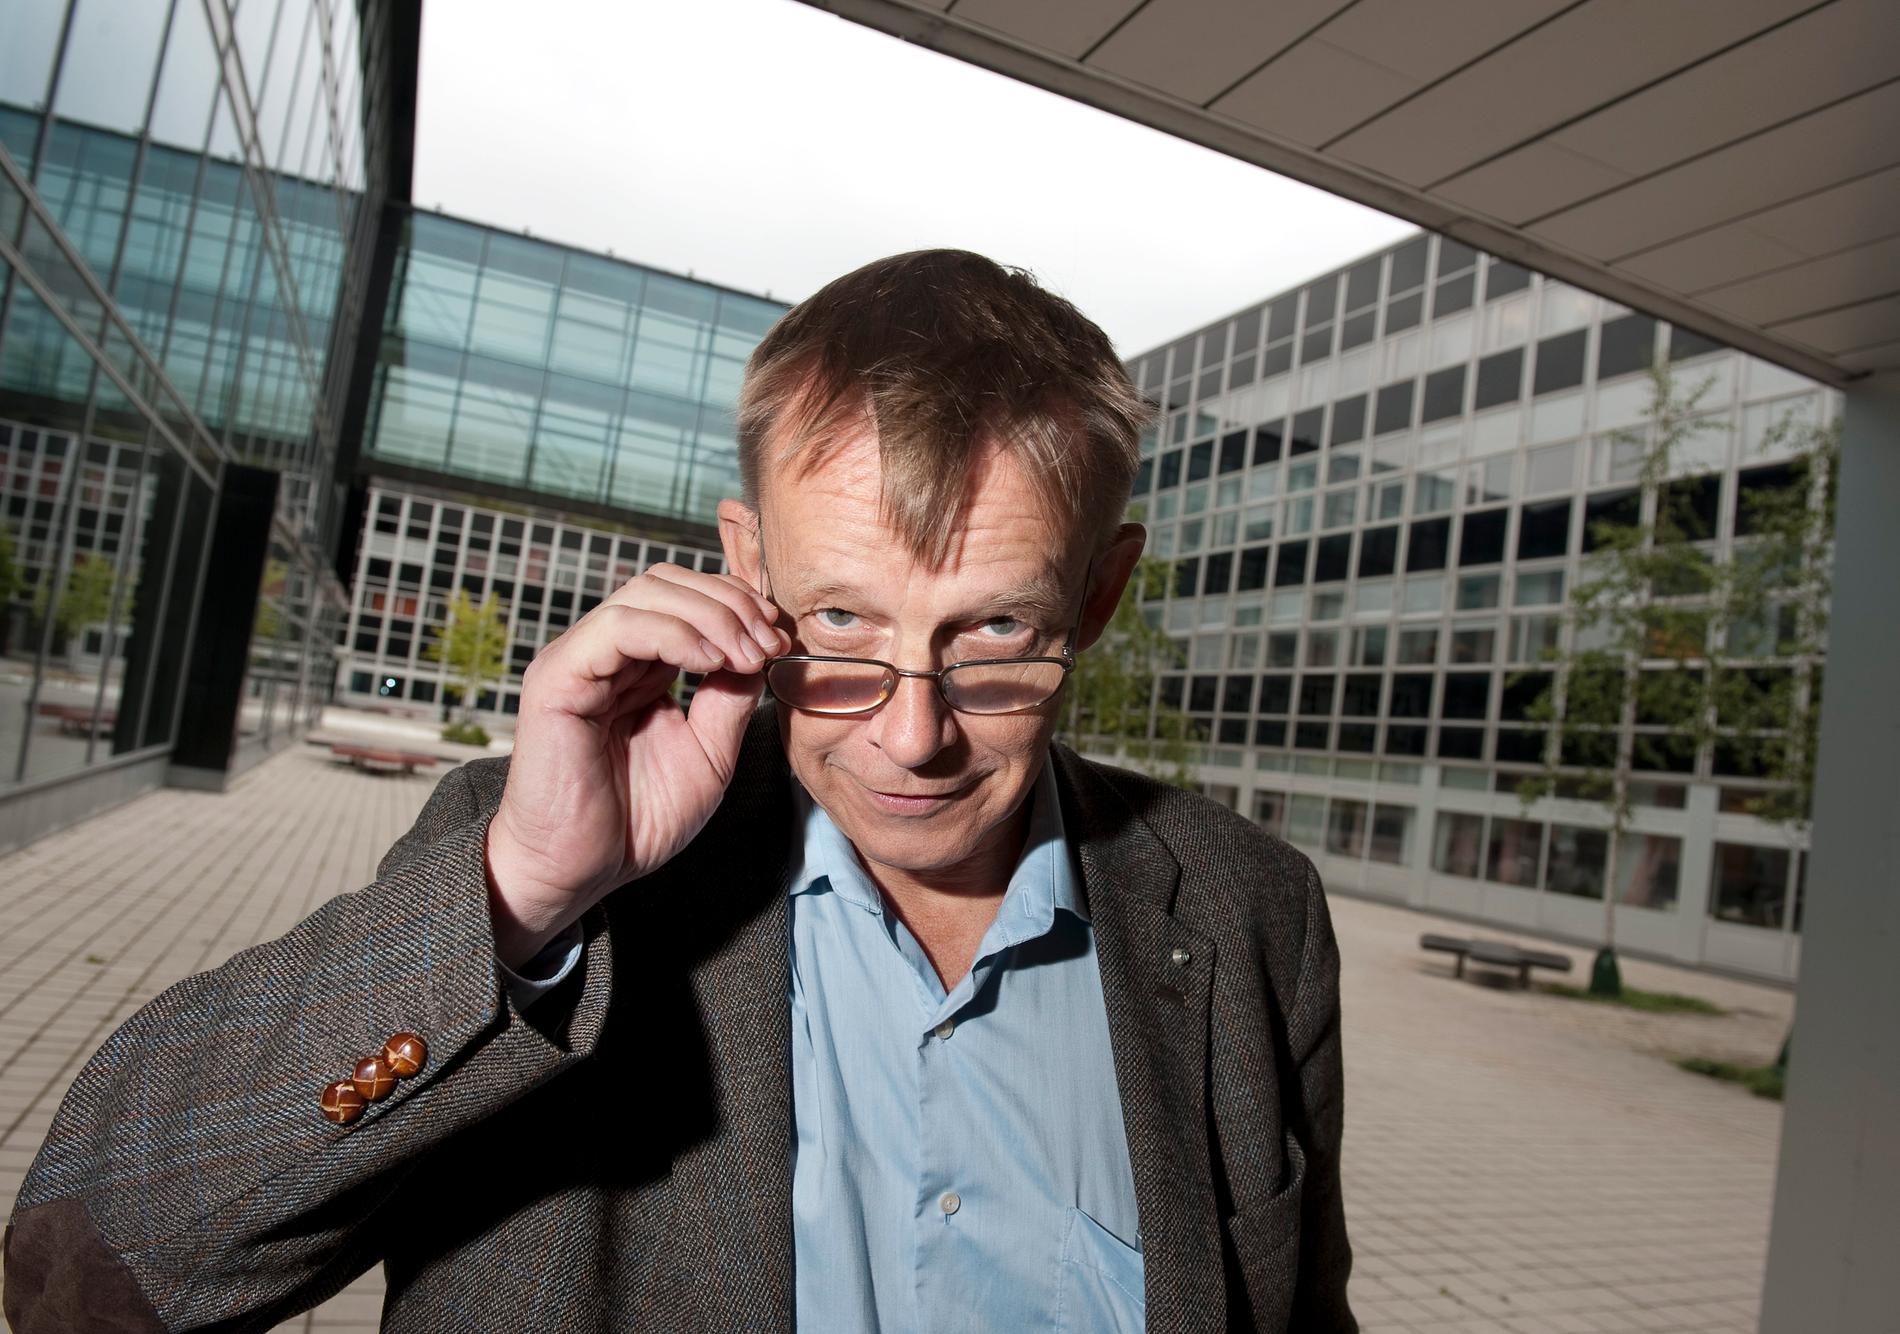 Hans Roslings bok ”Factfulness” ger intryck av att välstånd, vetenskap och klimatkrisen kommer att lösa sig av sig självt, skriver Åsa Linderborg.